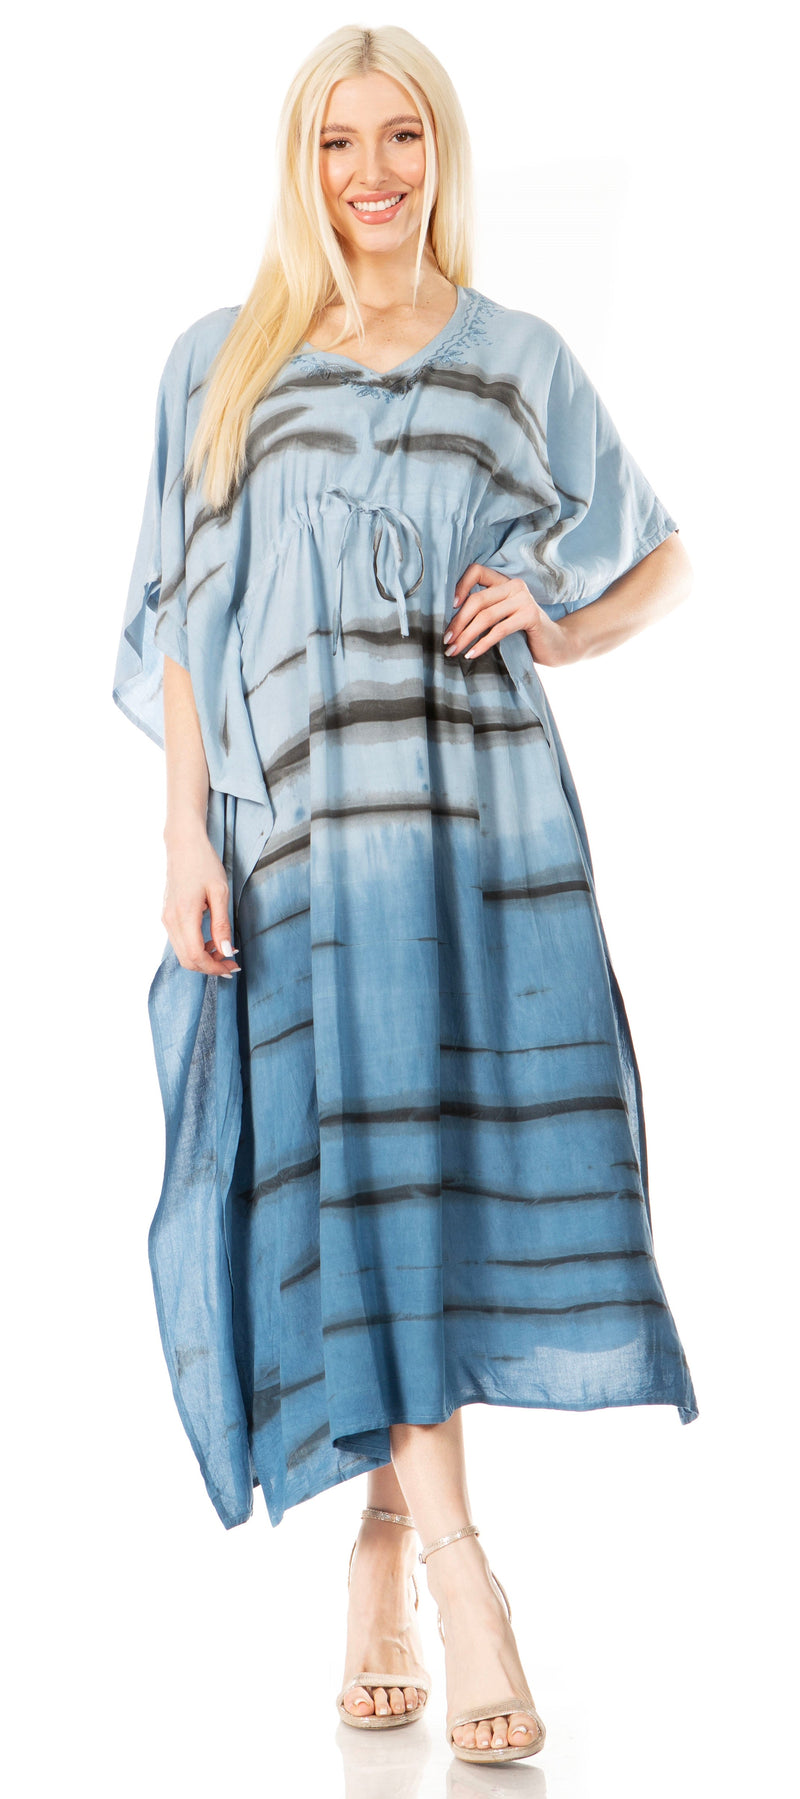 Sakkas Maitte Women's V neck Caftan Dress Cover-up Beach Print Kaftan Long Boho